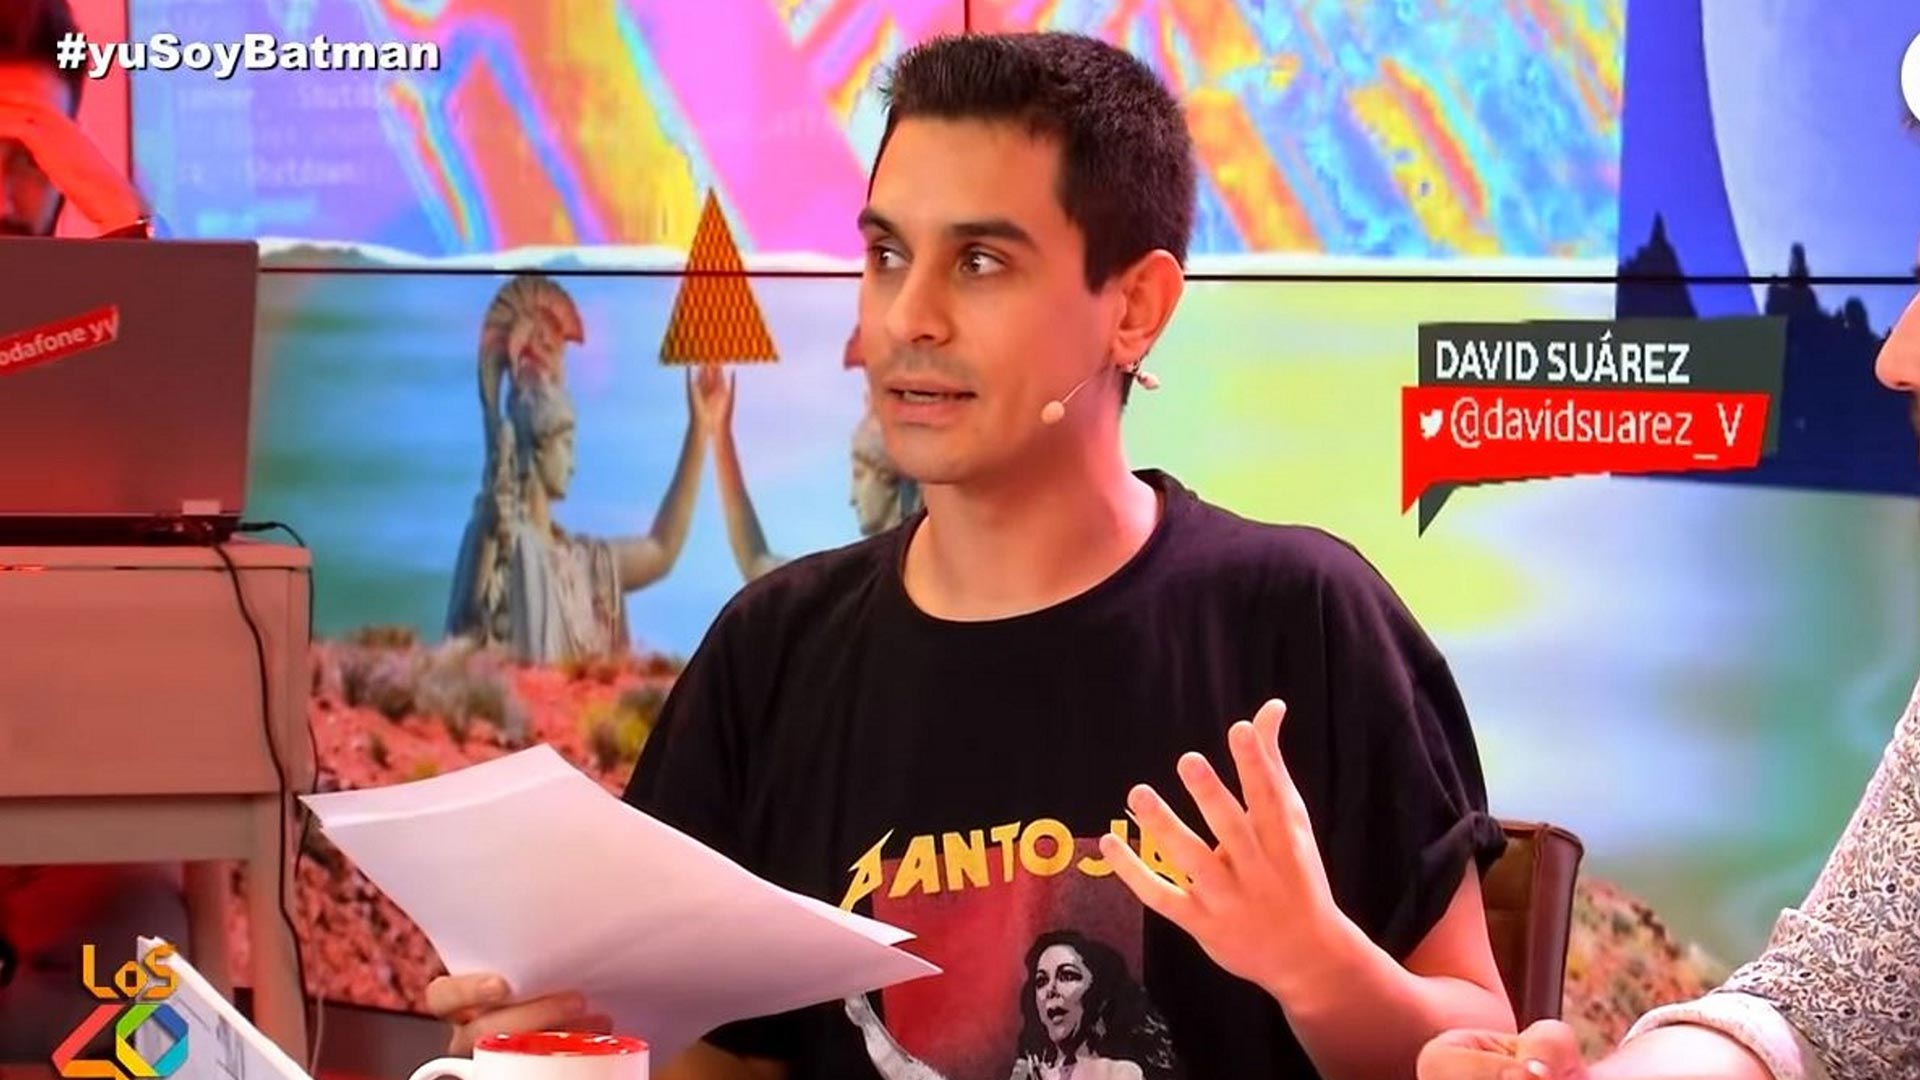 El cómico David Suárez se sienta en el banquillo el lunes por su chiste sobre las mujeres con síndrome de Down